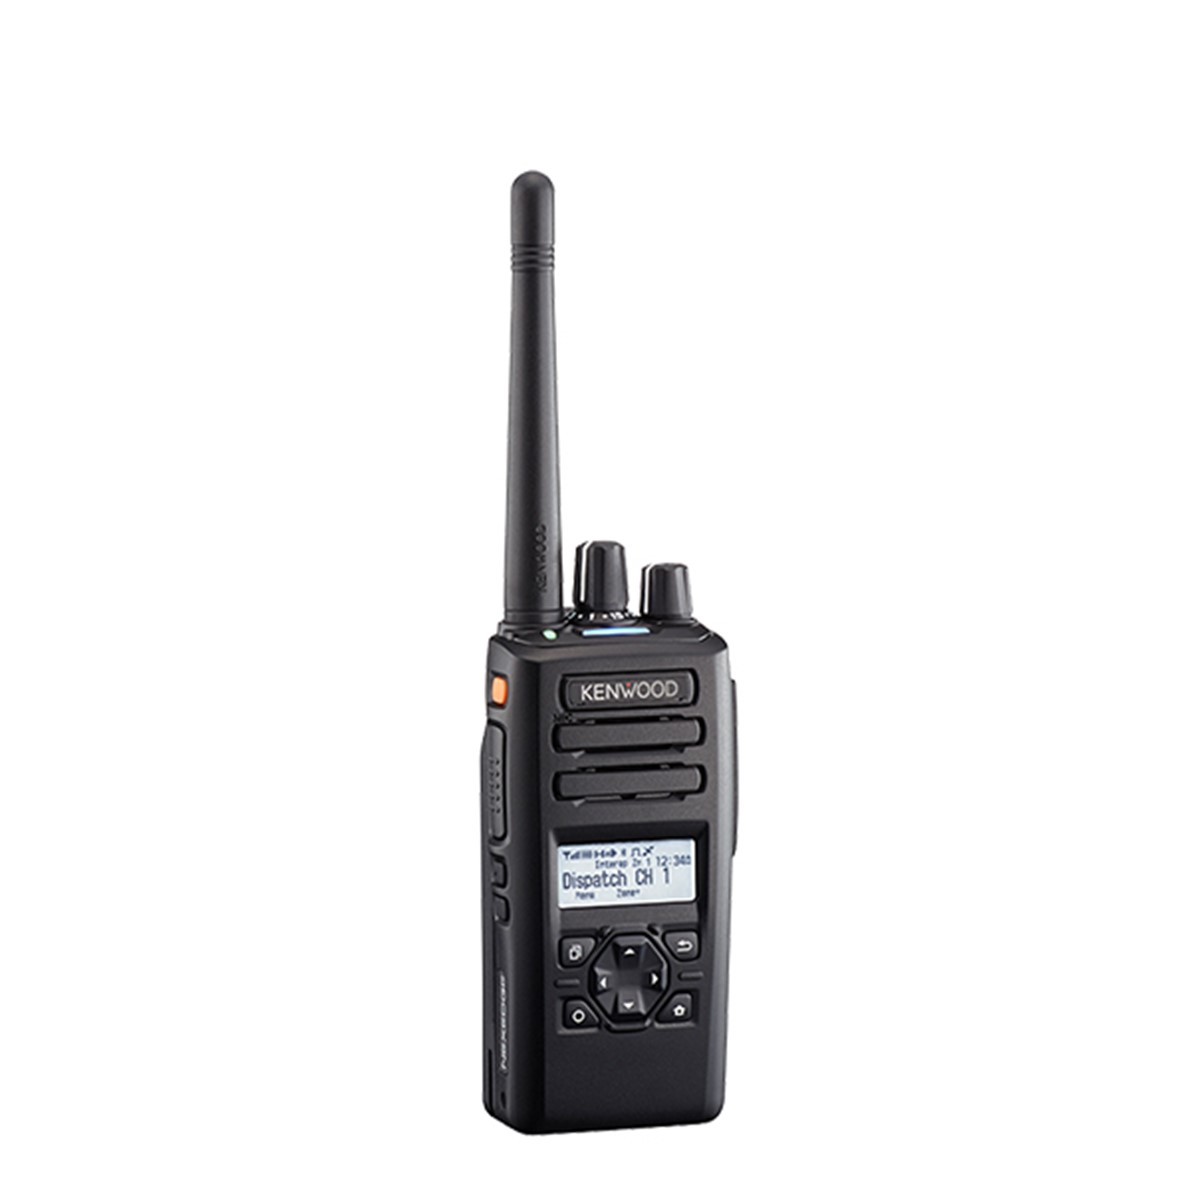 Radio KENWOOD NX-3200 Digital VHF 136-174 MHz con pantalla y teclado reducido